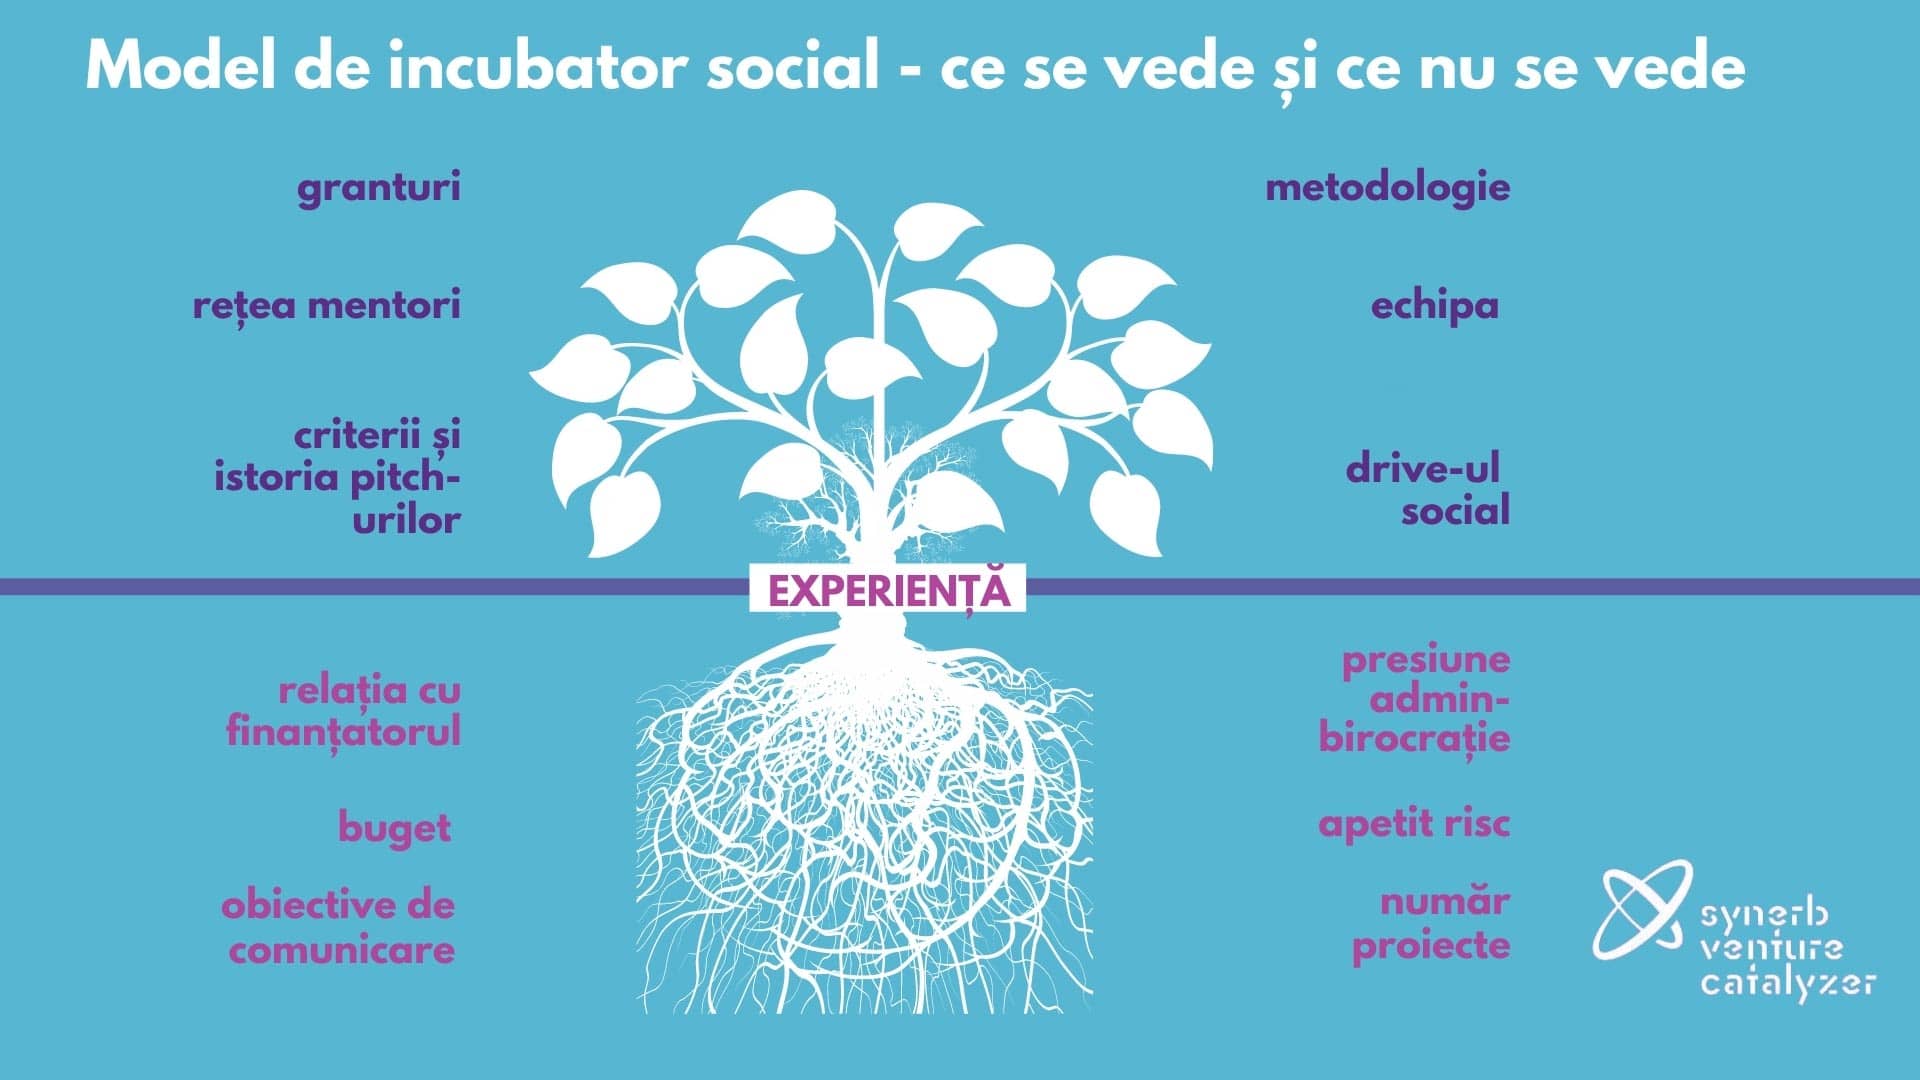 Model de incubator afaceri sociale Synerb